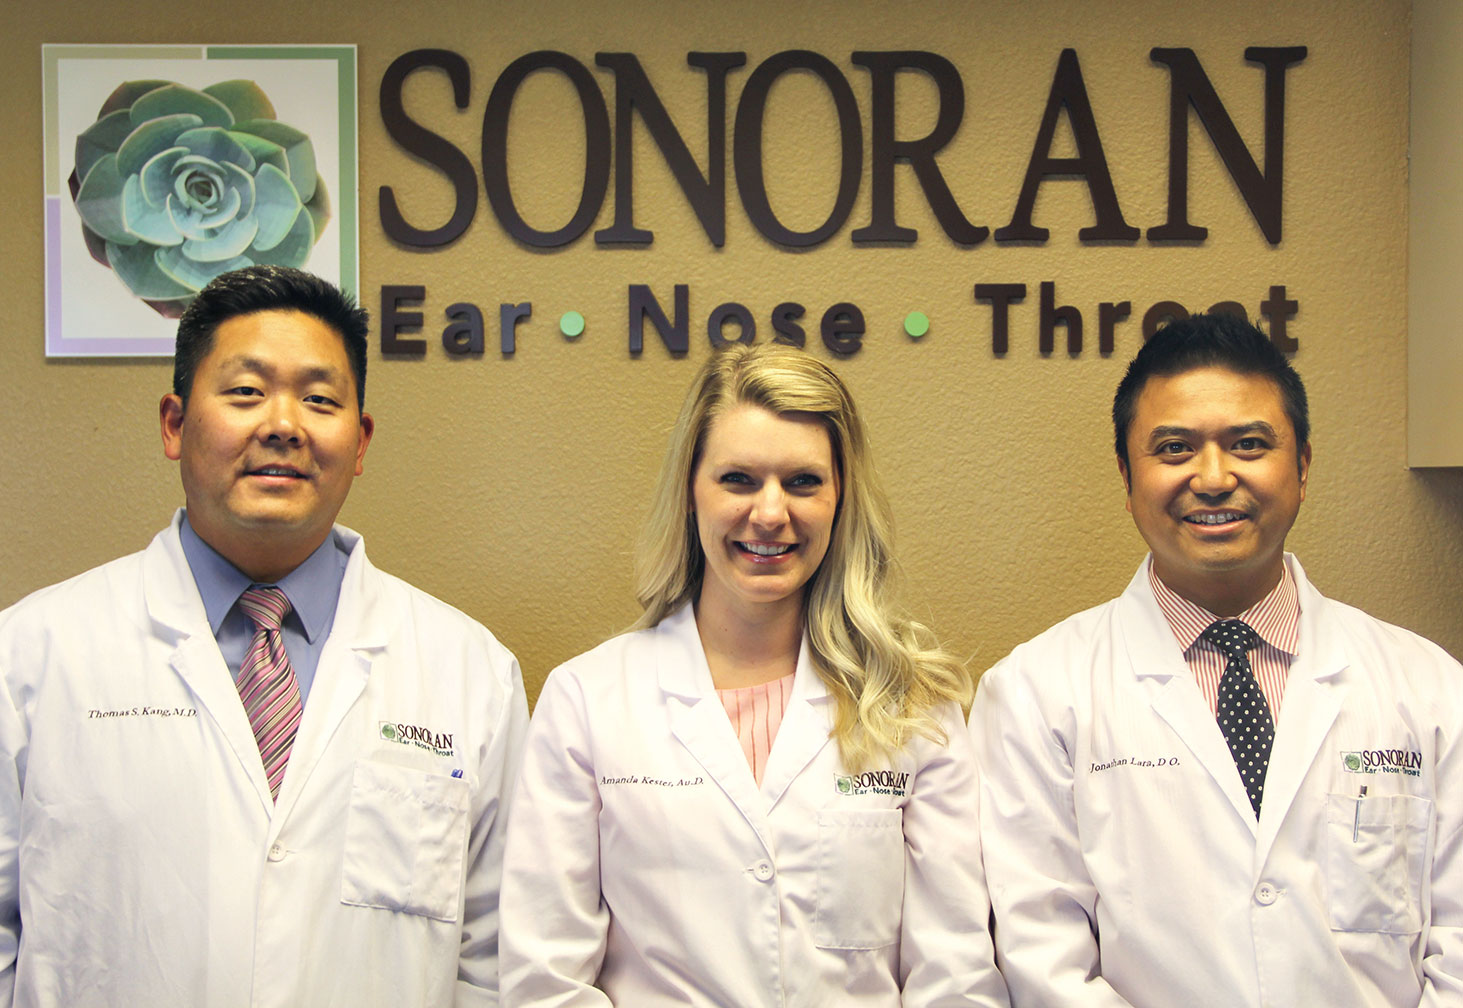 Left to right: Drs. Thomas Kang, Amanda Kester and Jonathan Lara